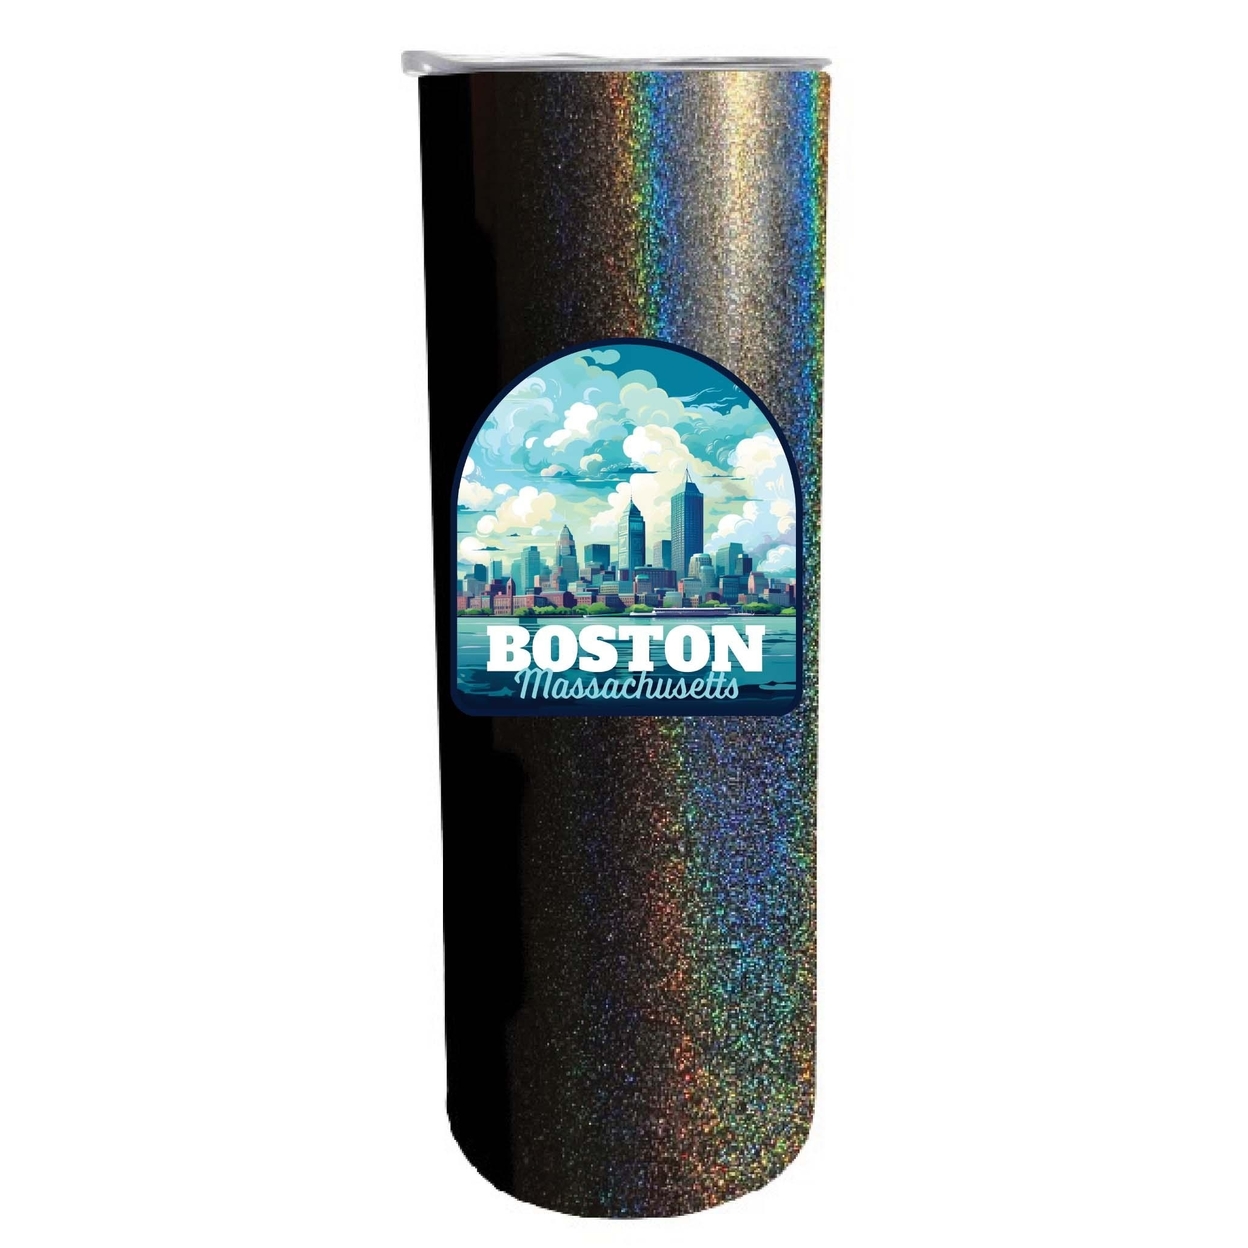 Boston Massachusetts A Souvenir 20 Oz Insulated Skinny Tumbler Glitter - Black Glitter,,Single